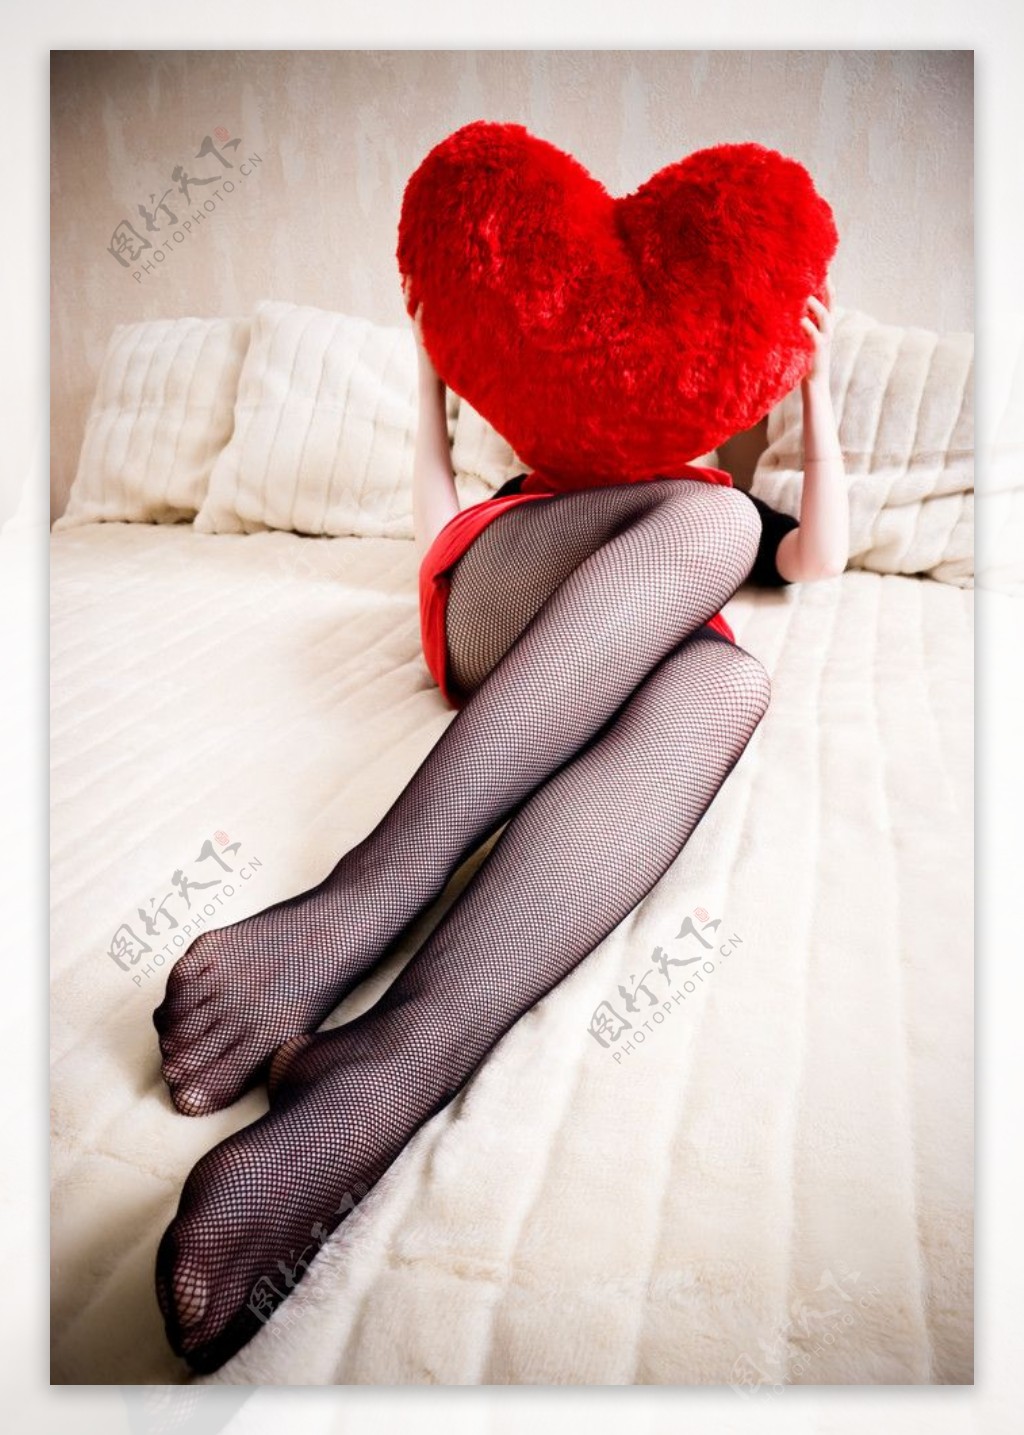 躺在床上拿着爱心枕头的性感美女图片